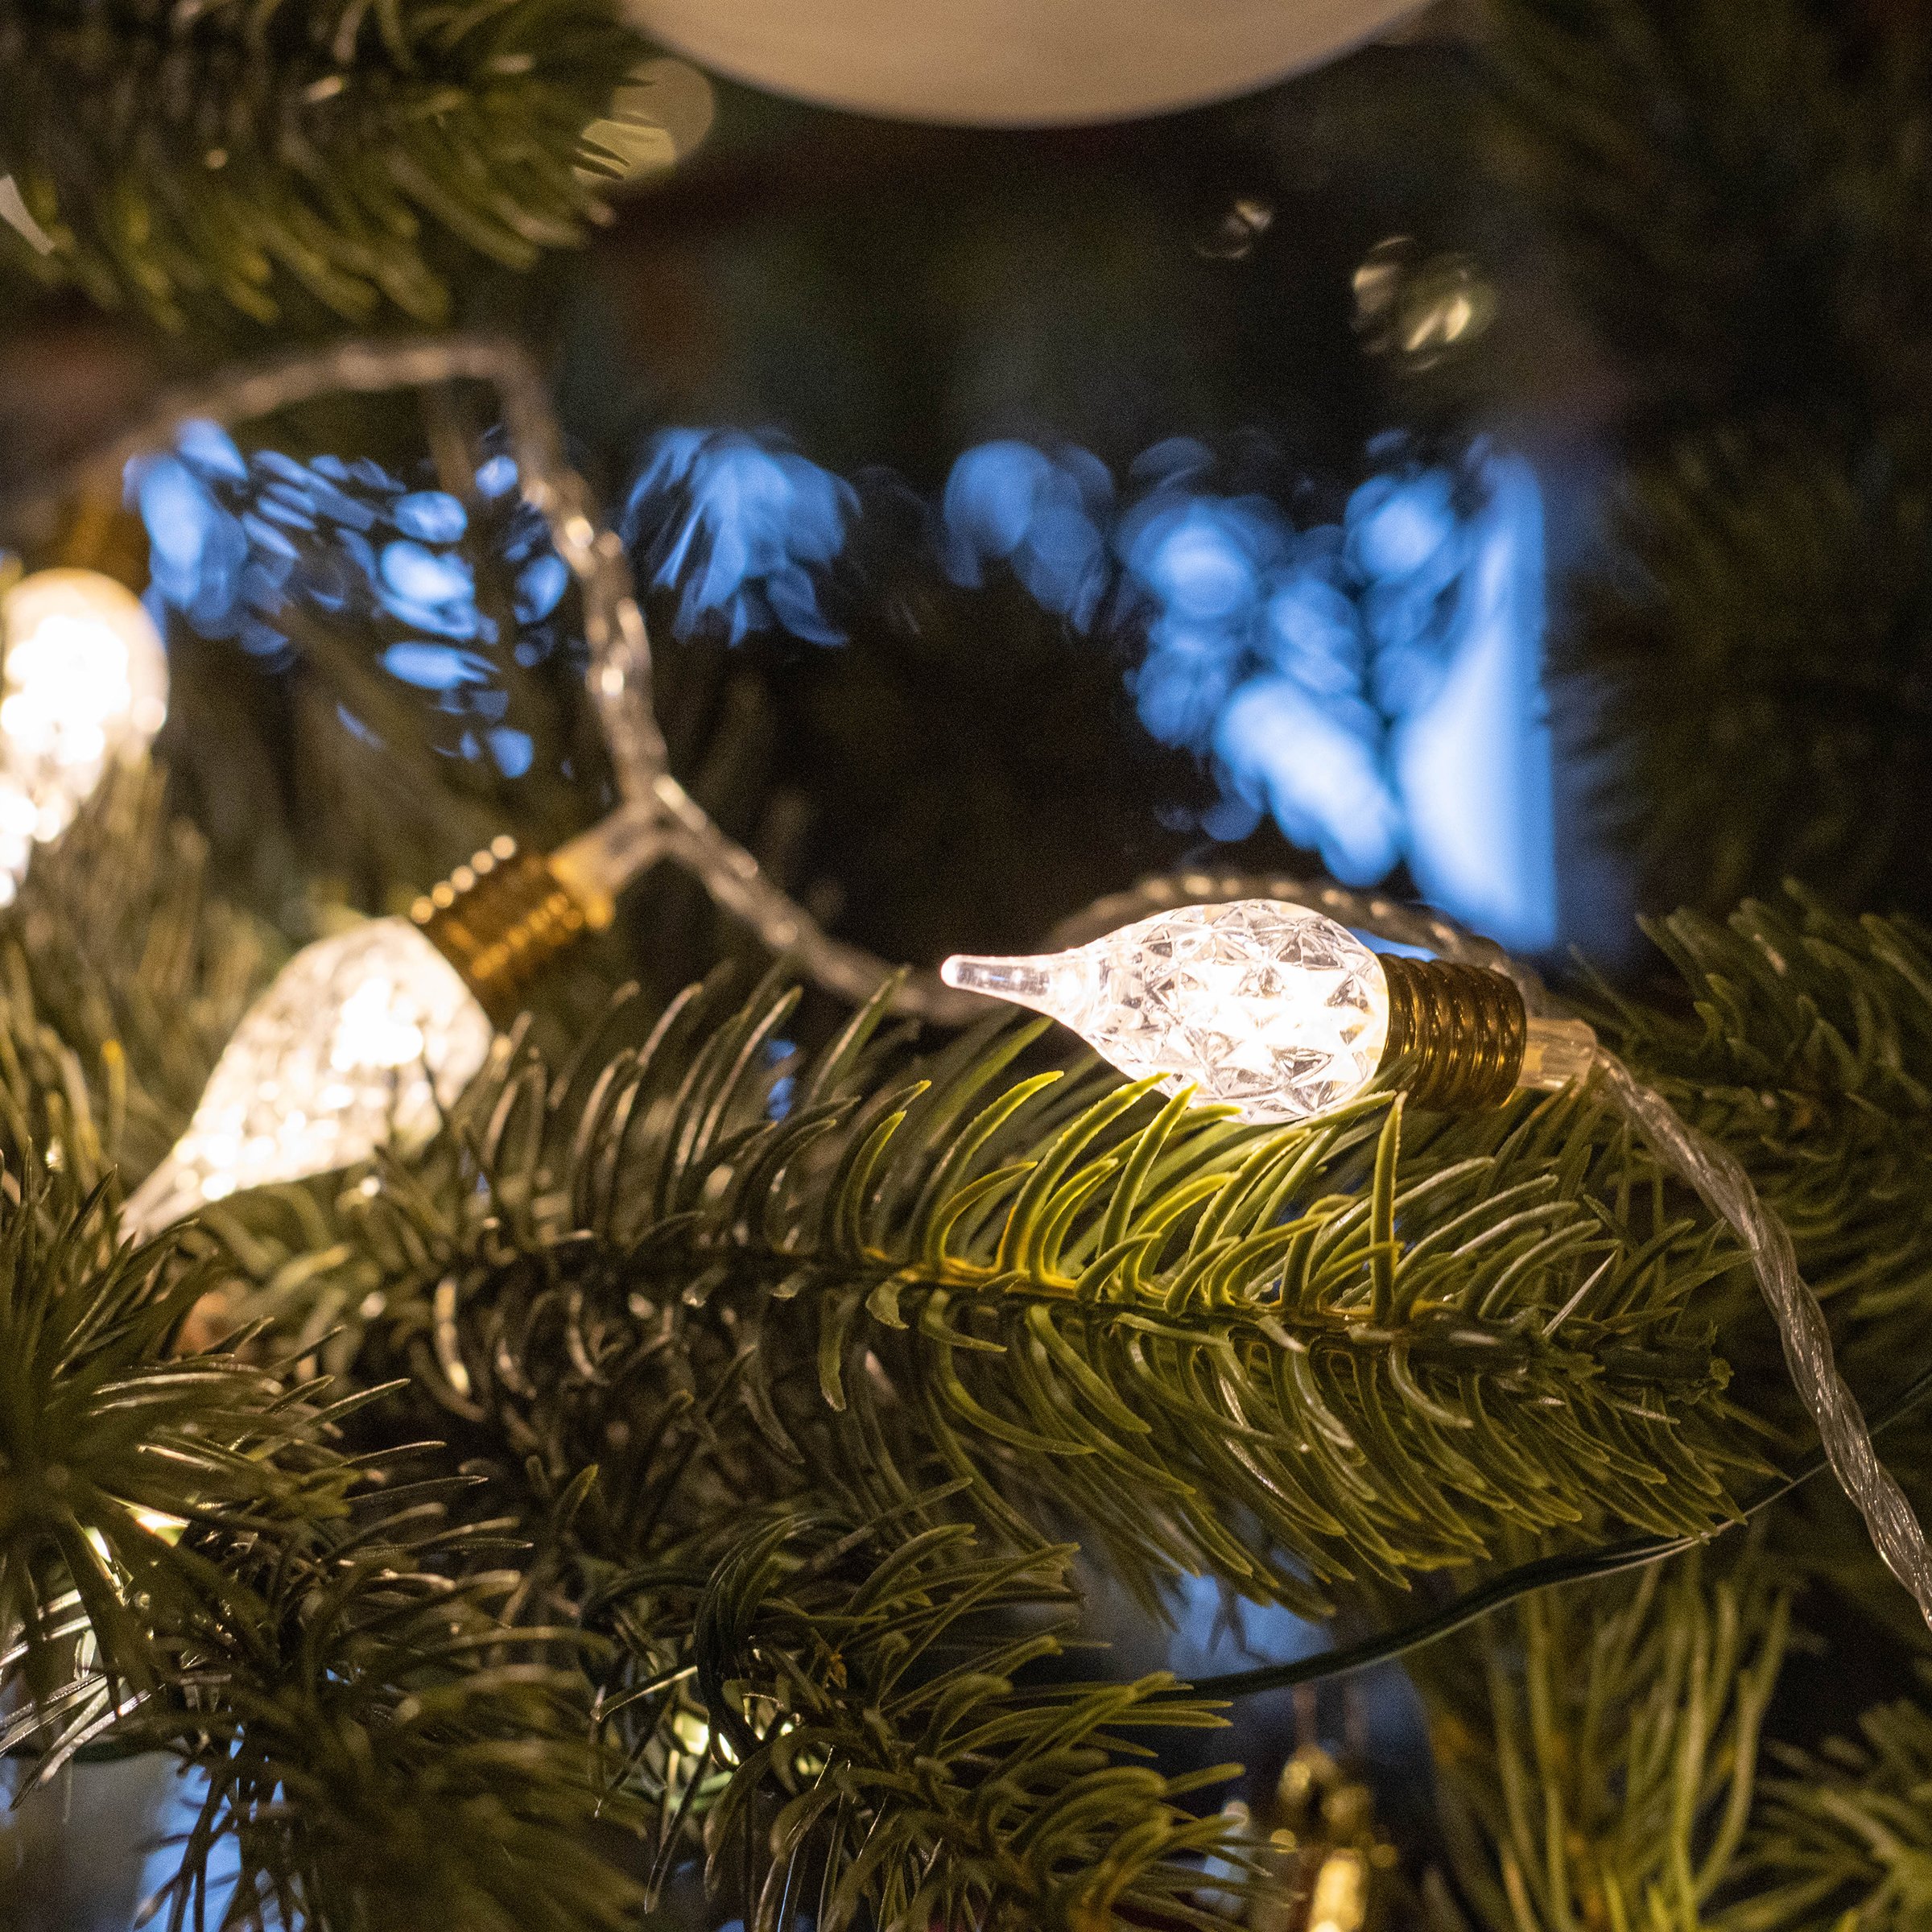 Guirlande de Noël lumineuse Décoration sapin artificiel lumières blanc  chaud